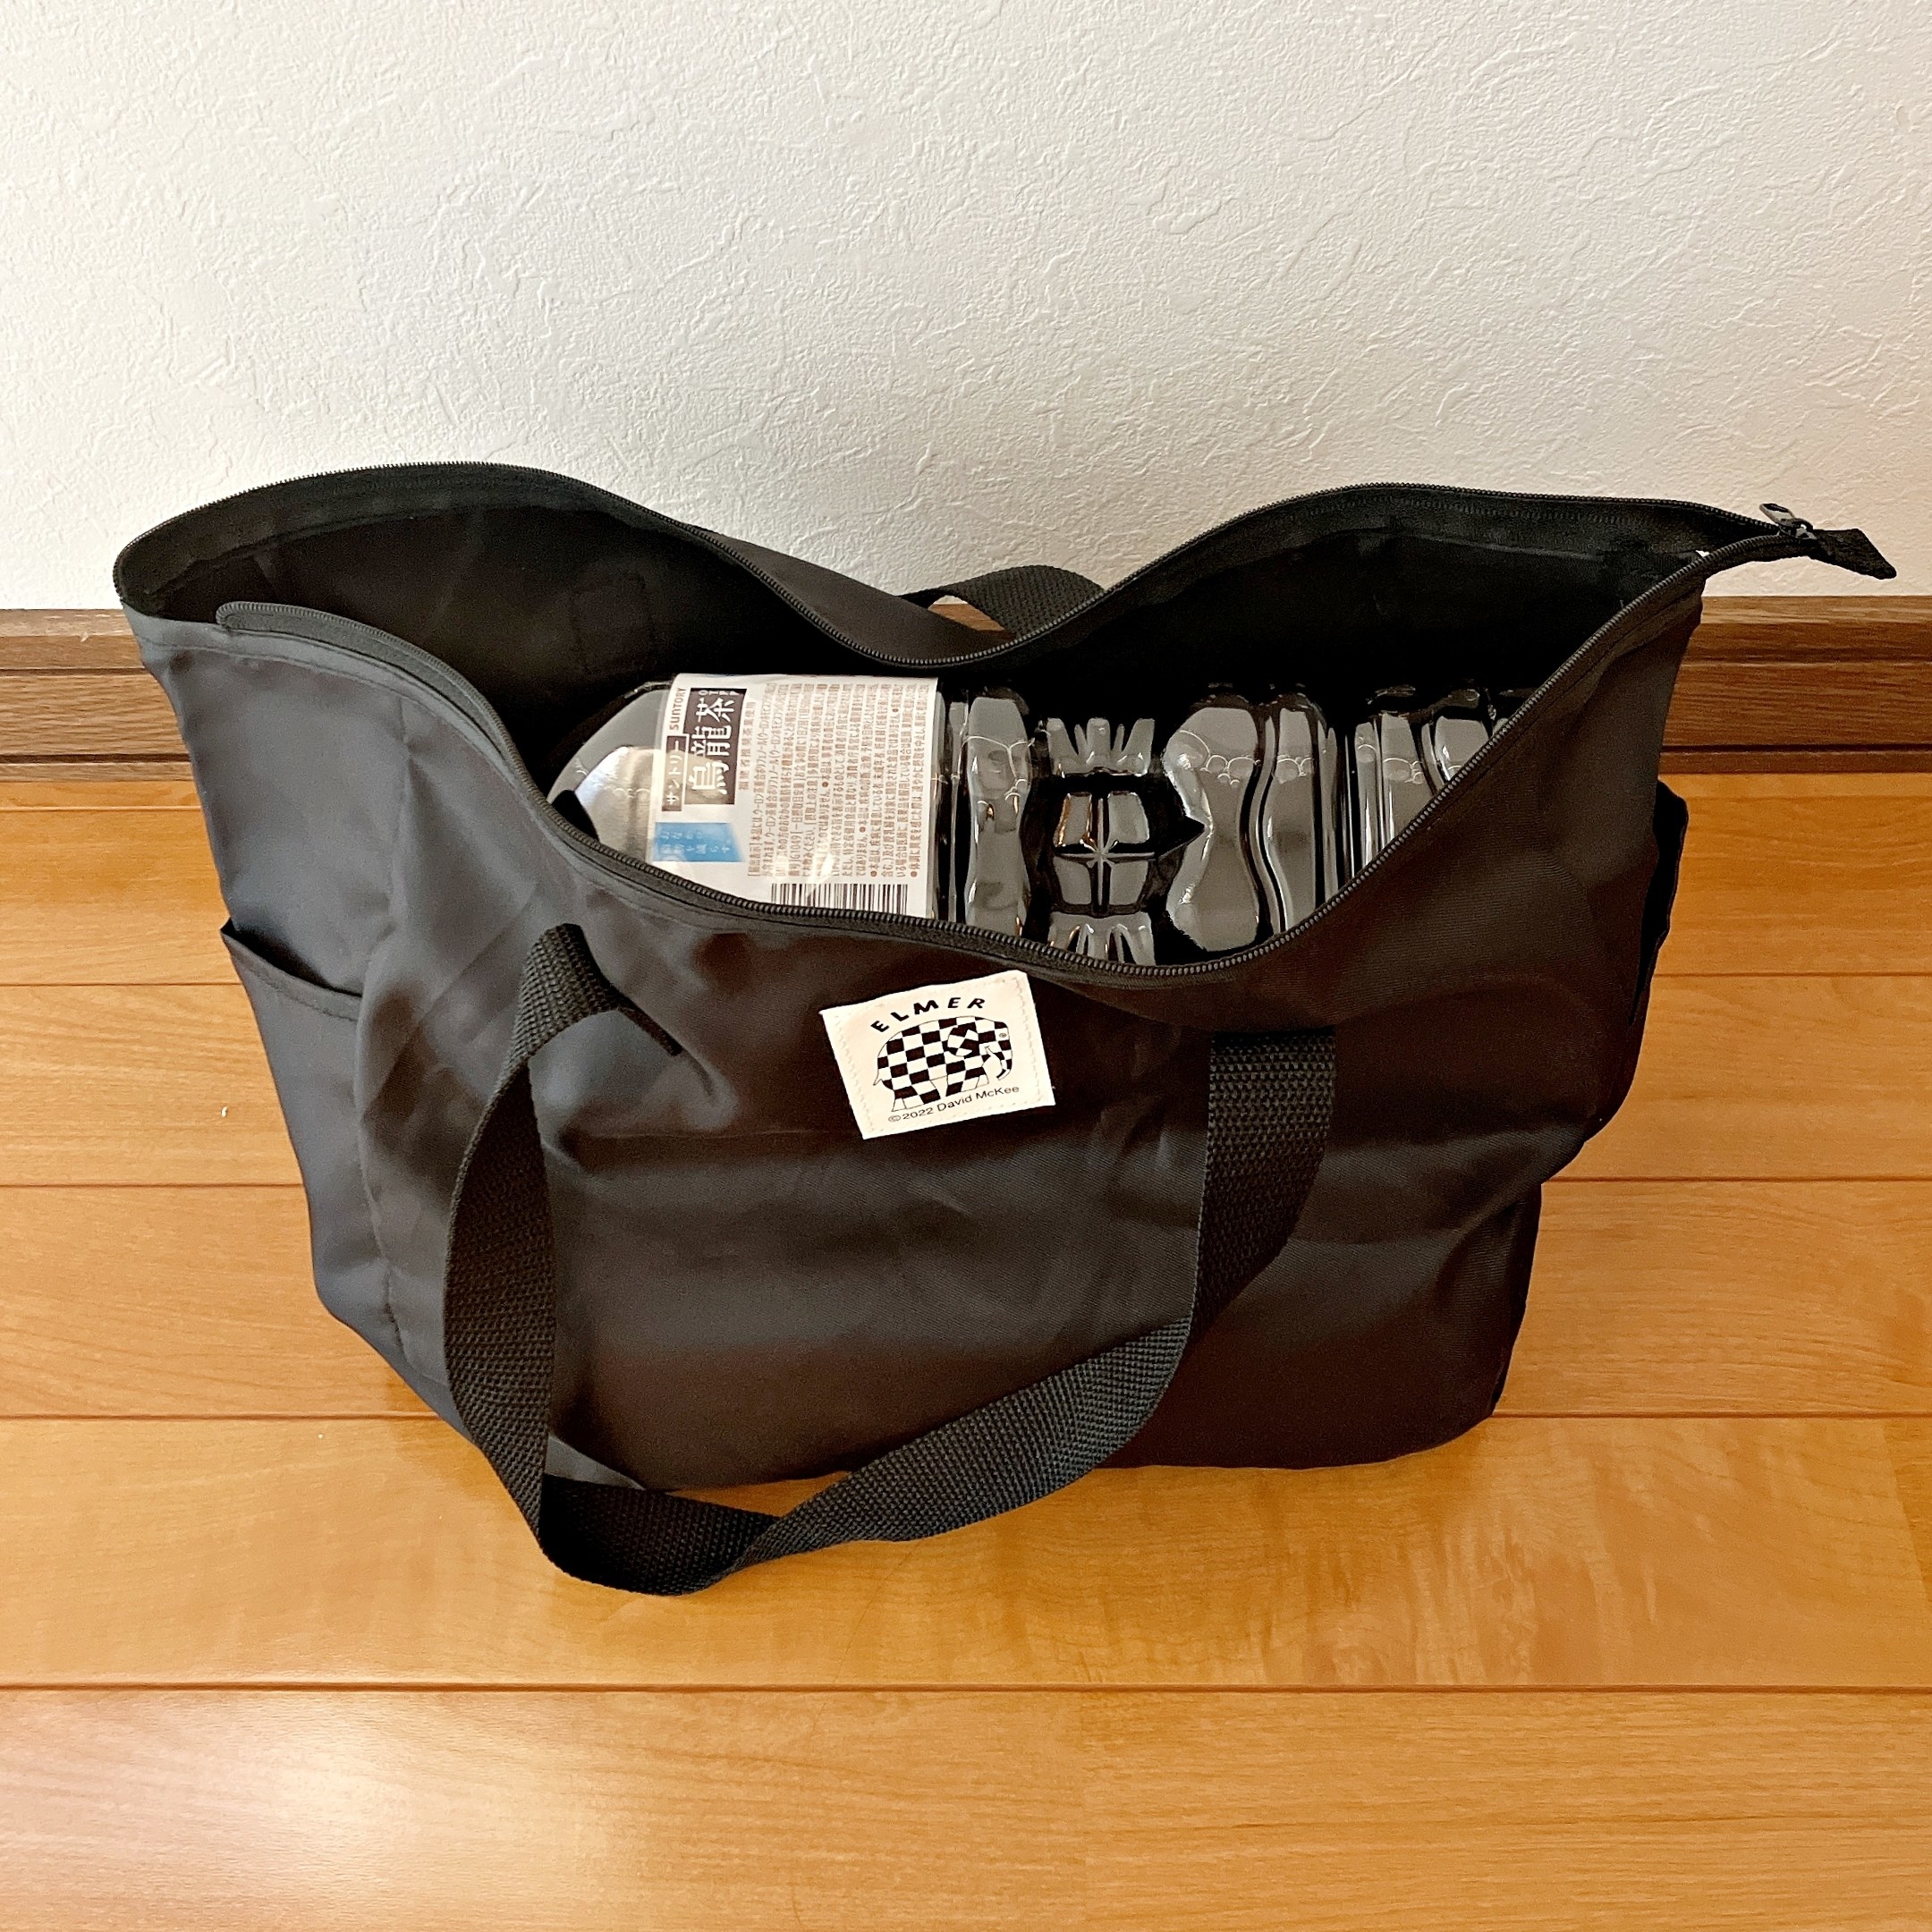 DAISO（ダイソー）のおすすめバッグ「マザーズマチ付バッグ（ELMER）」